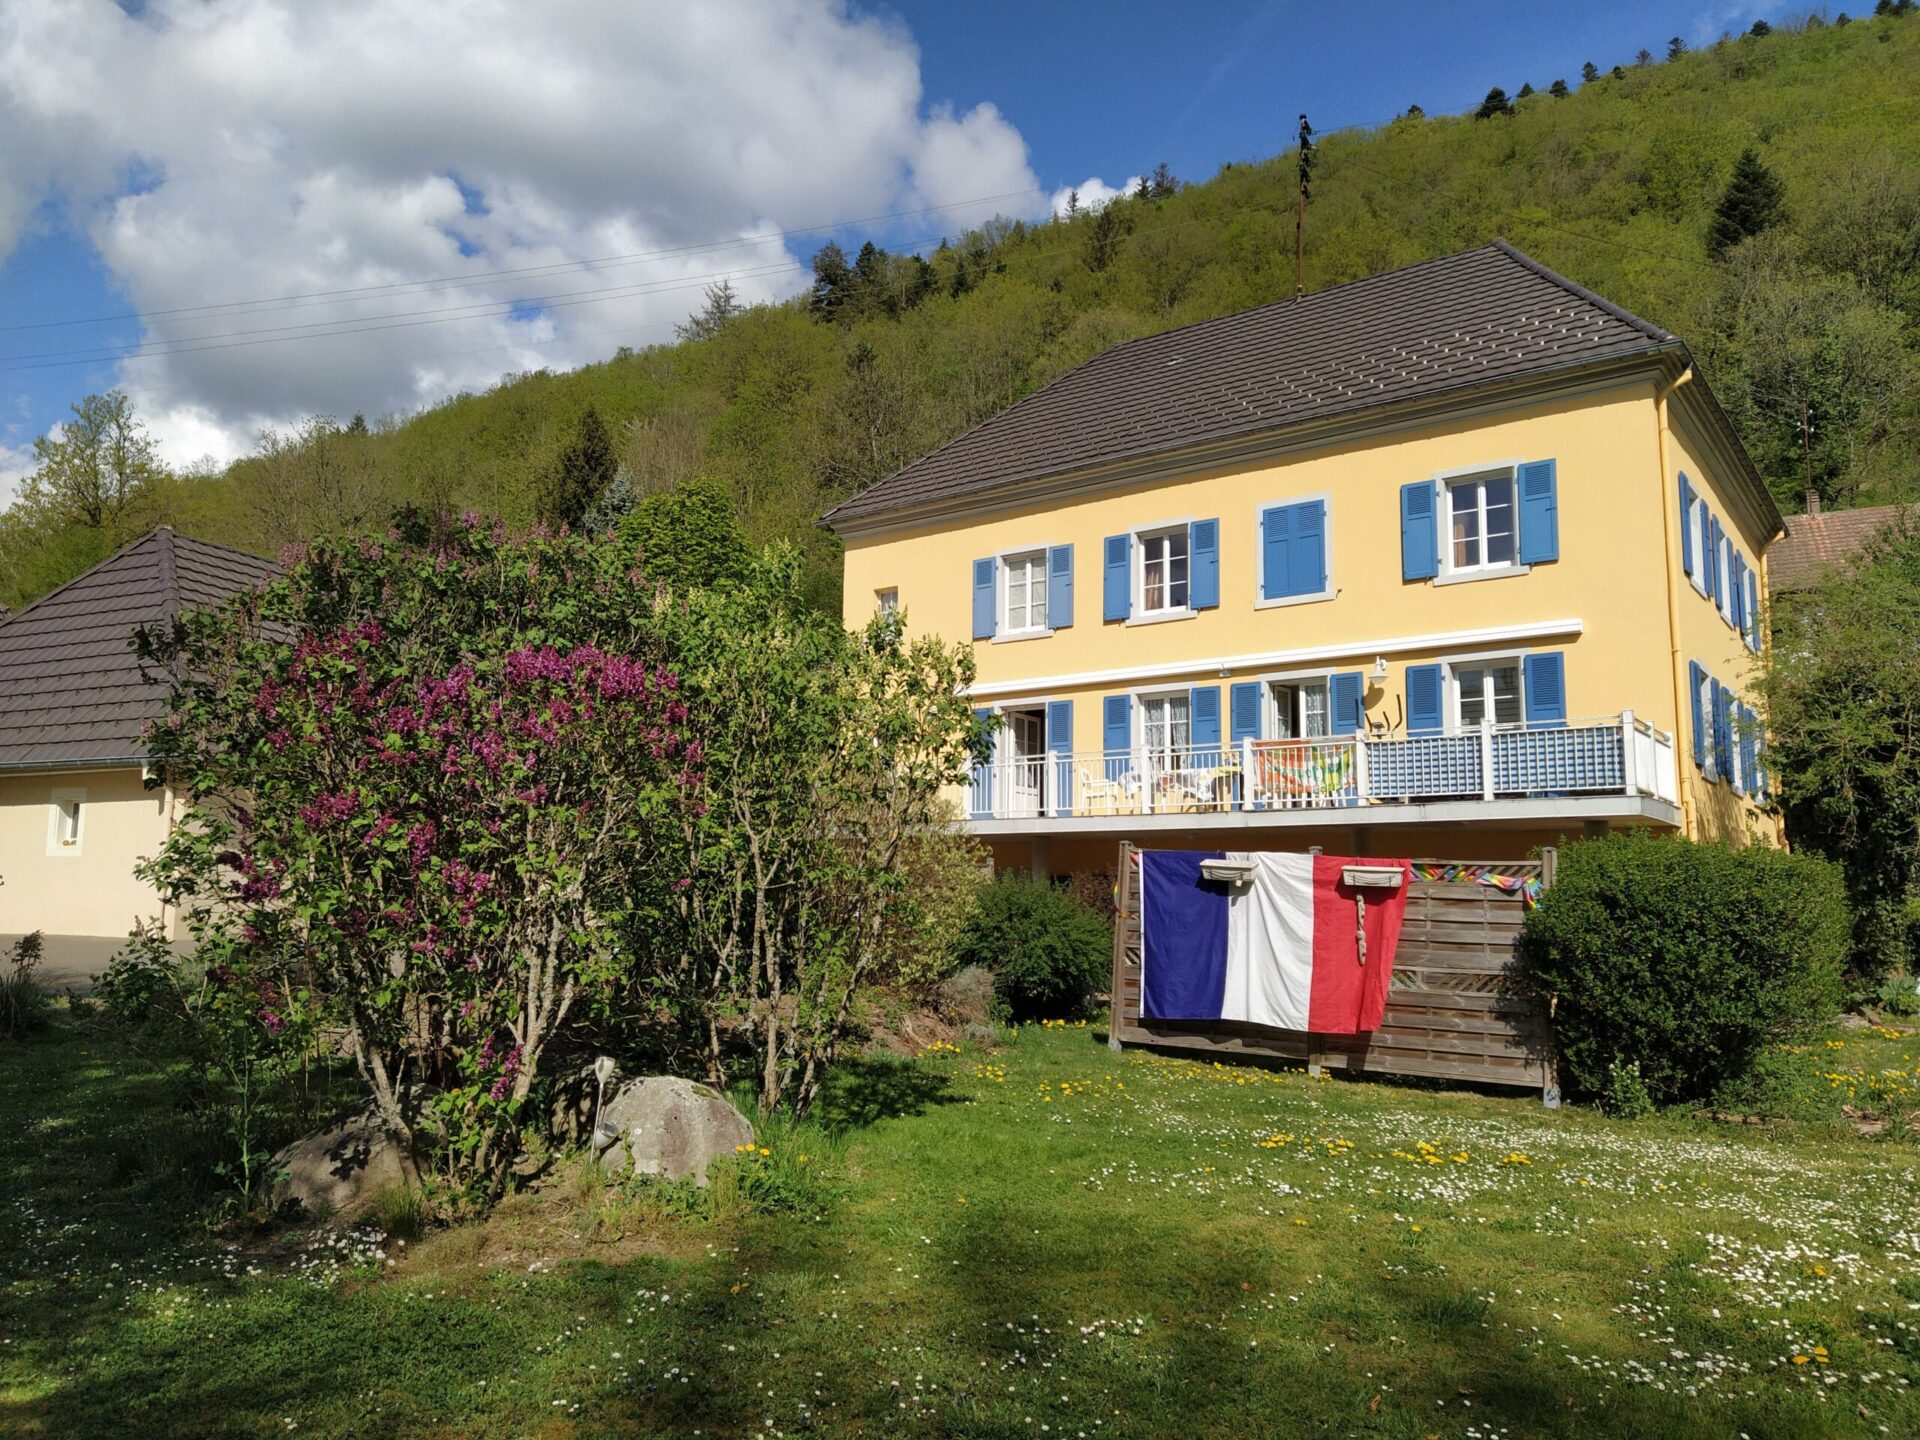 Pourquoi vous êtes-vous lancé dans le projet d’ouvrir votre propre maison d’hôtes ouverte à la communauté LGBT dans les Vosges?